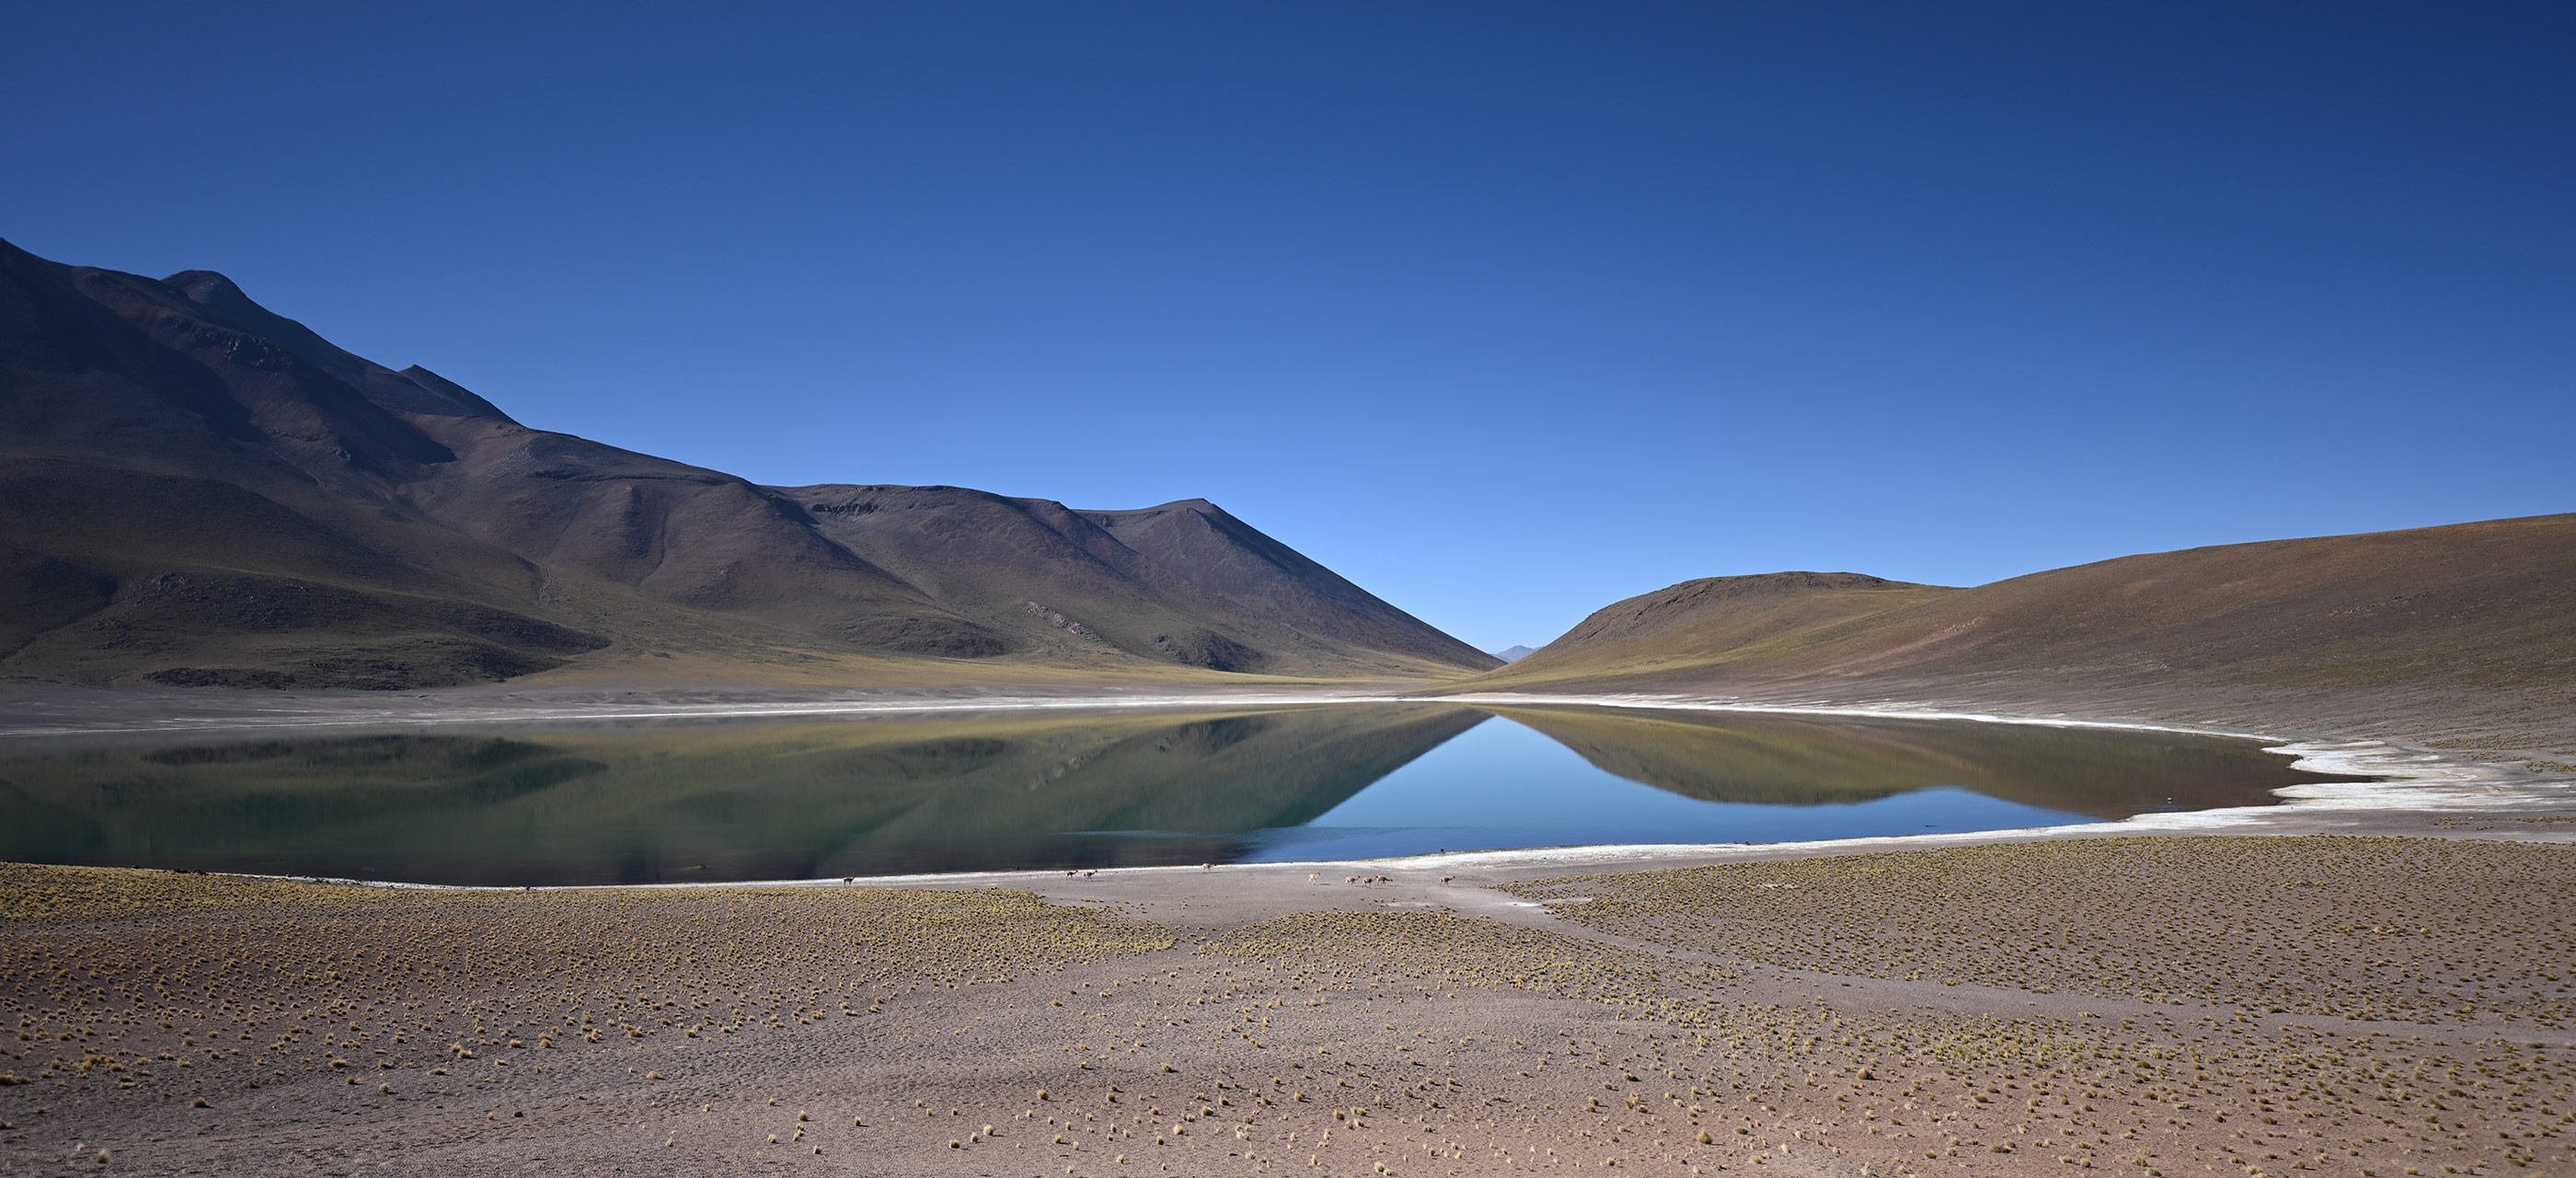 NIKKOR Z 20mm f / 1.8 S ile çekilmiş bir göl ve dağlık manzara fotoğrafı